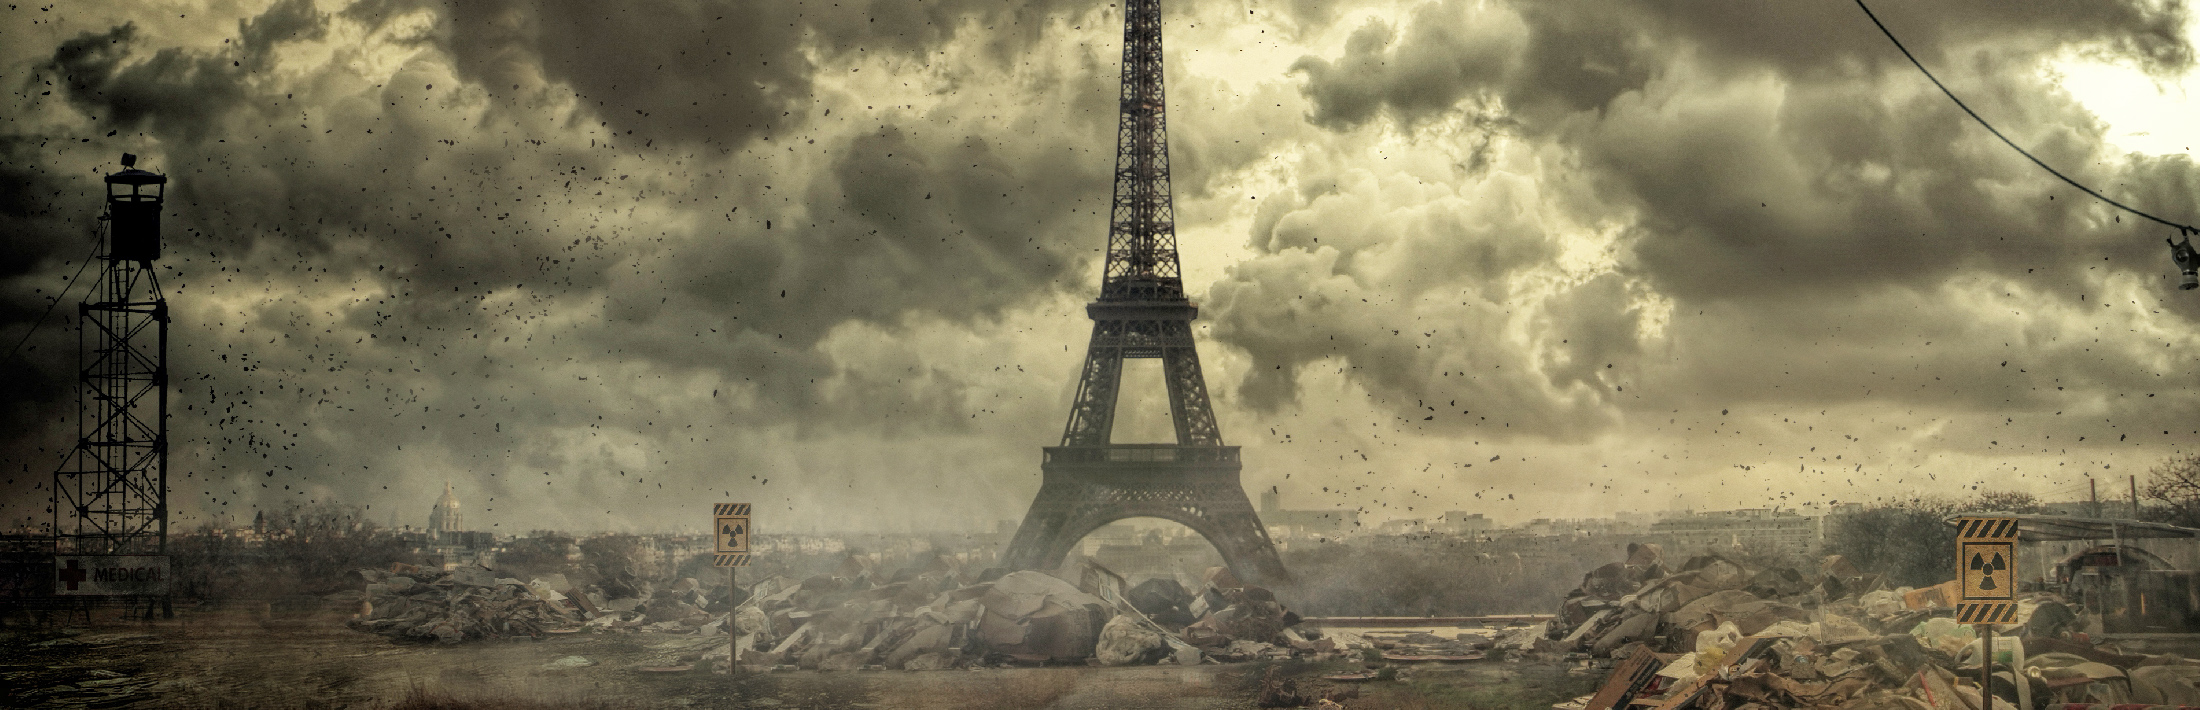 Paris après une catastrophe nucléaire